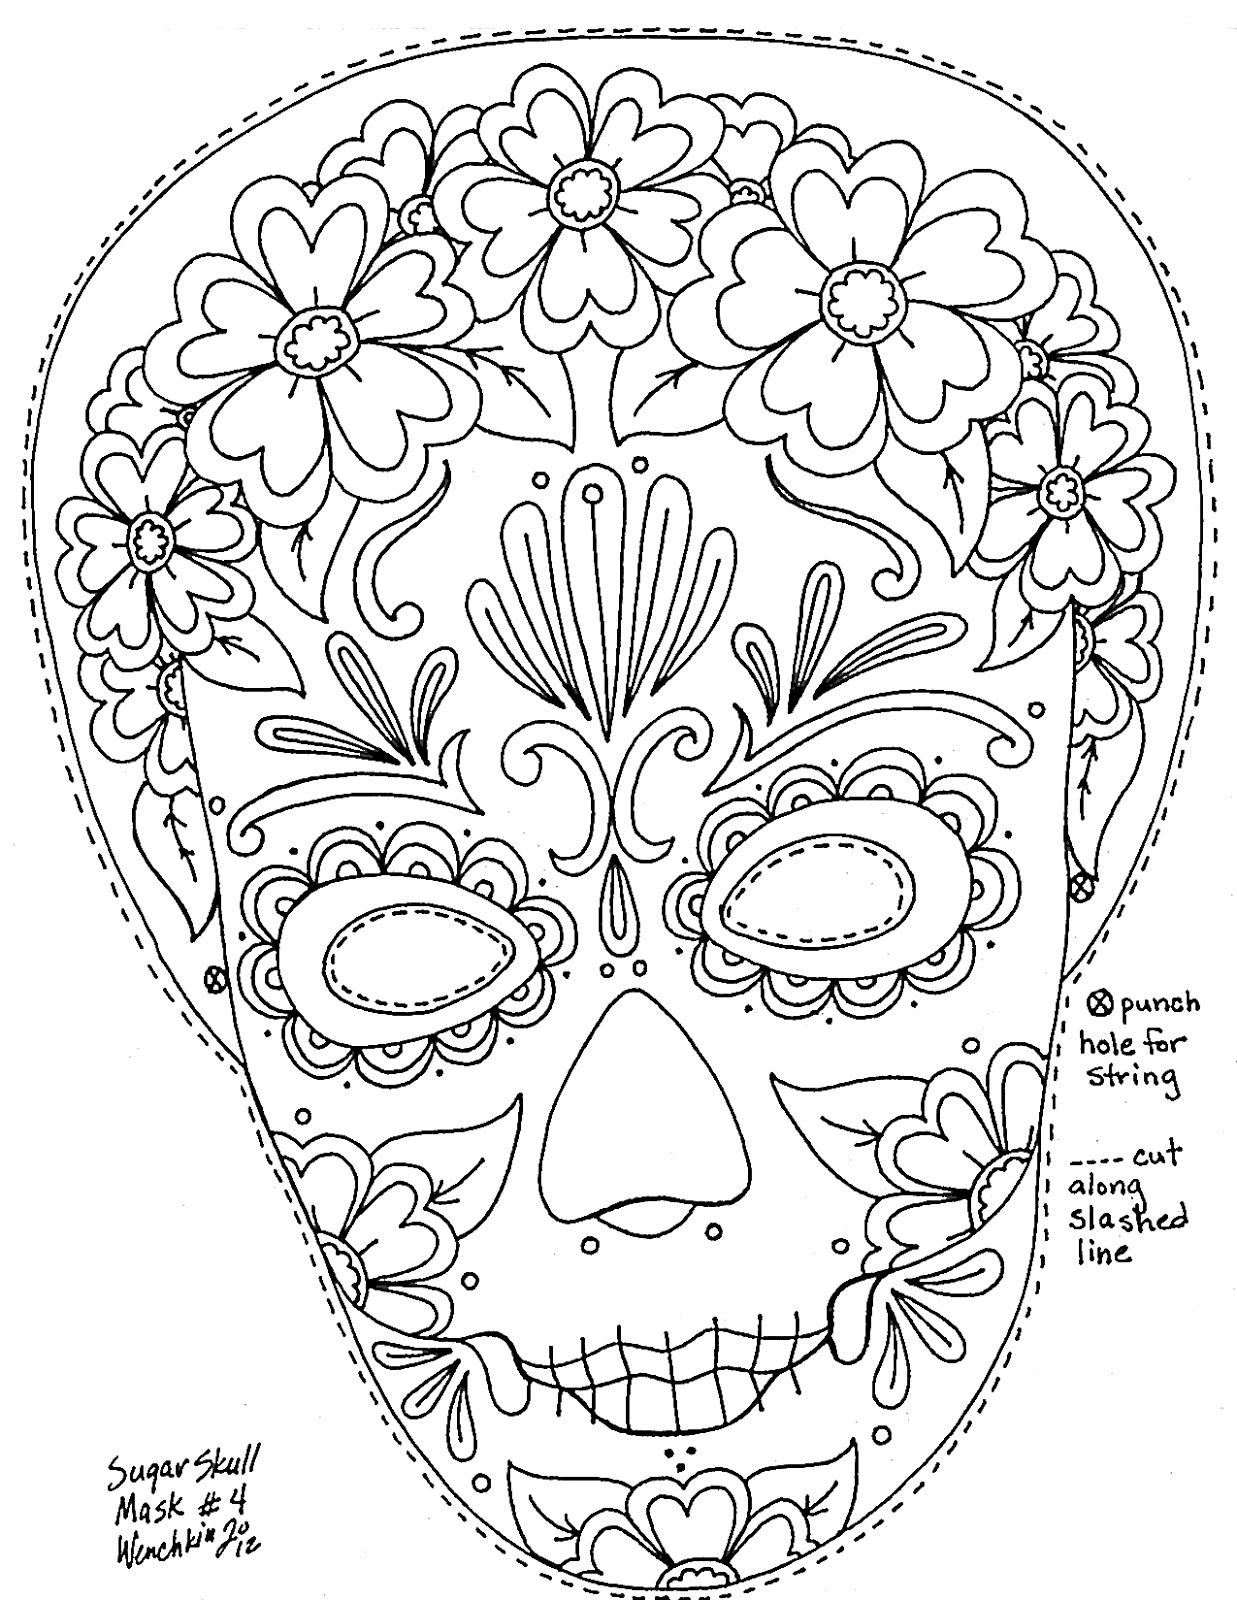 calavara mask coloring pages - photo #24